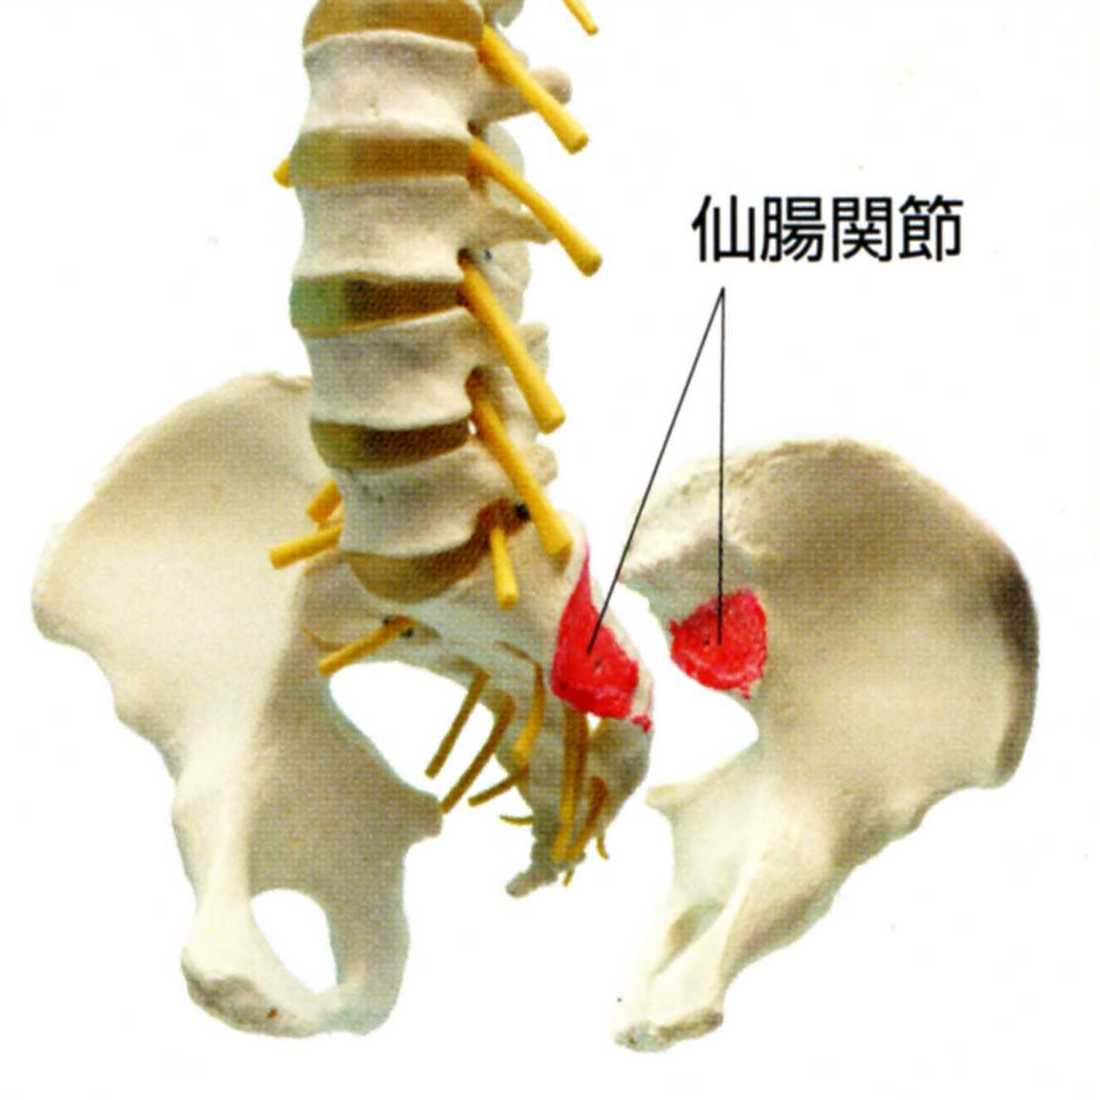 ぎっくり腰の原因箇所:仙腸関節の歪み,仙腸関節障害調整法で１０秒で完治。